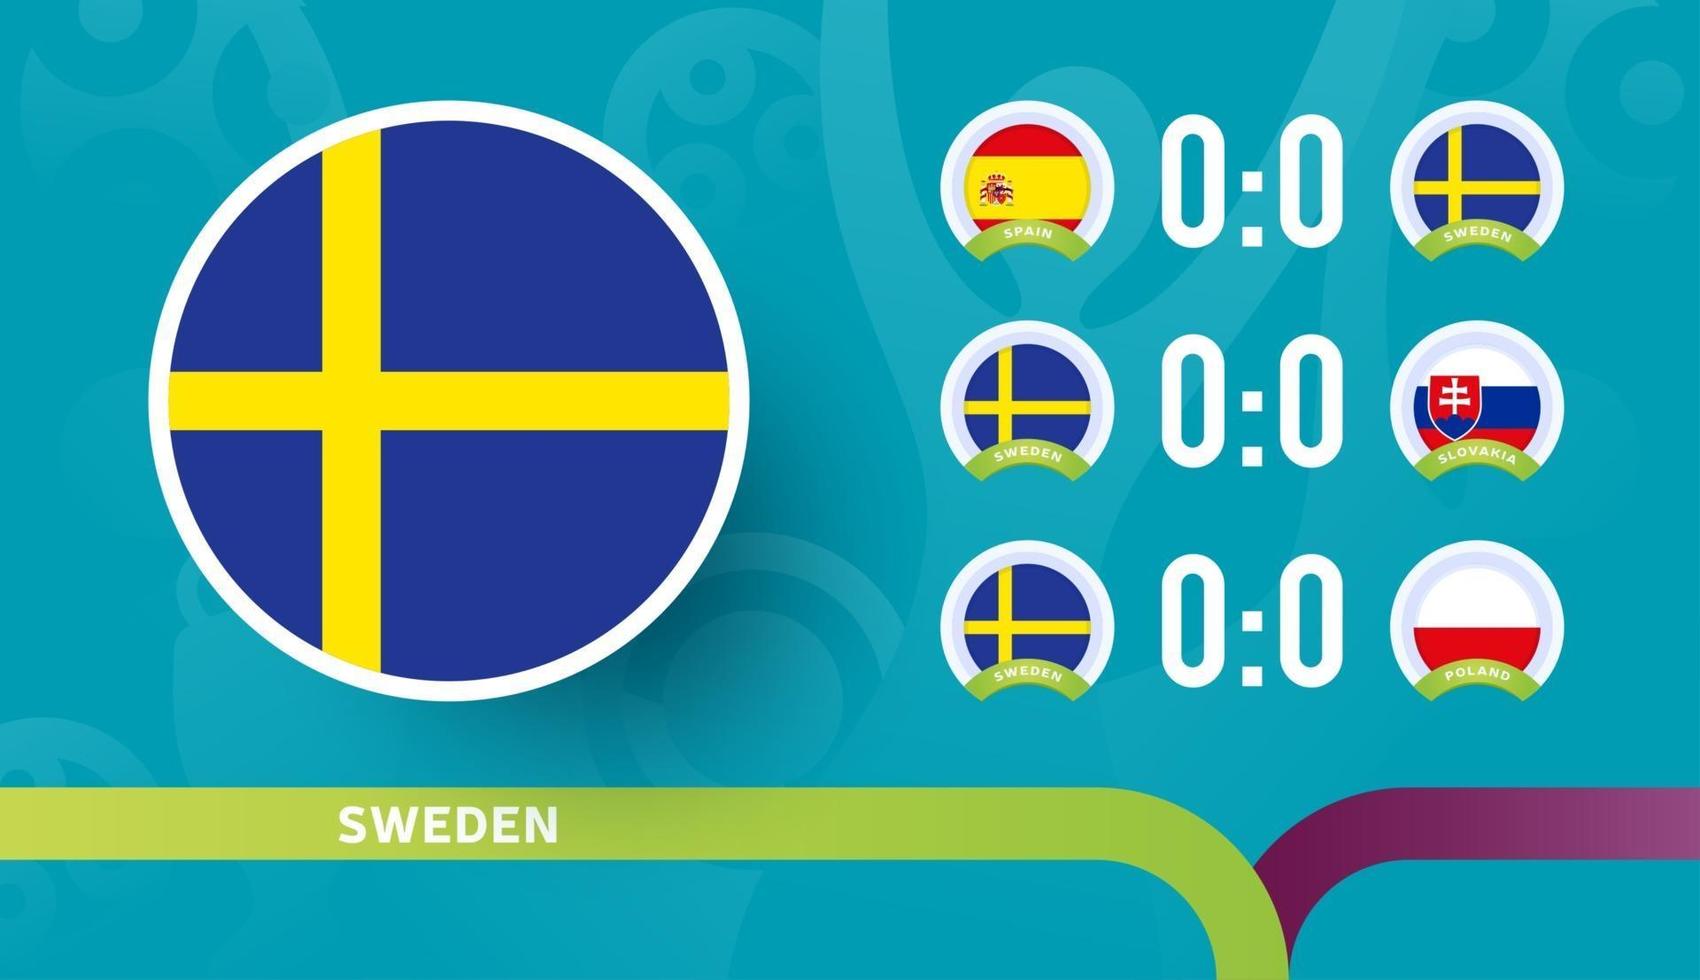 Calendario de partidos de la selección de Suecia en la fase final del campeonato de fútbol de 2020. ilustración vectorial de partidos de fútbol 2020 vector